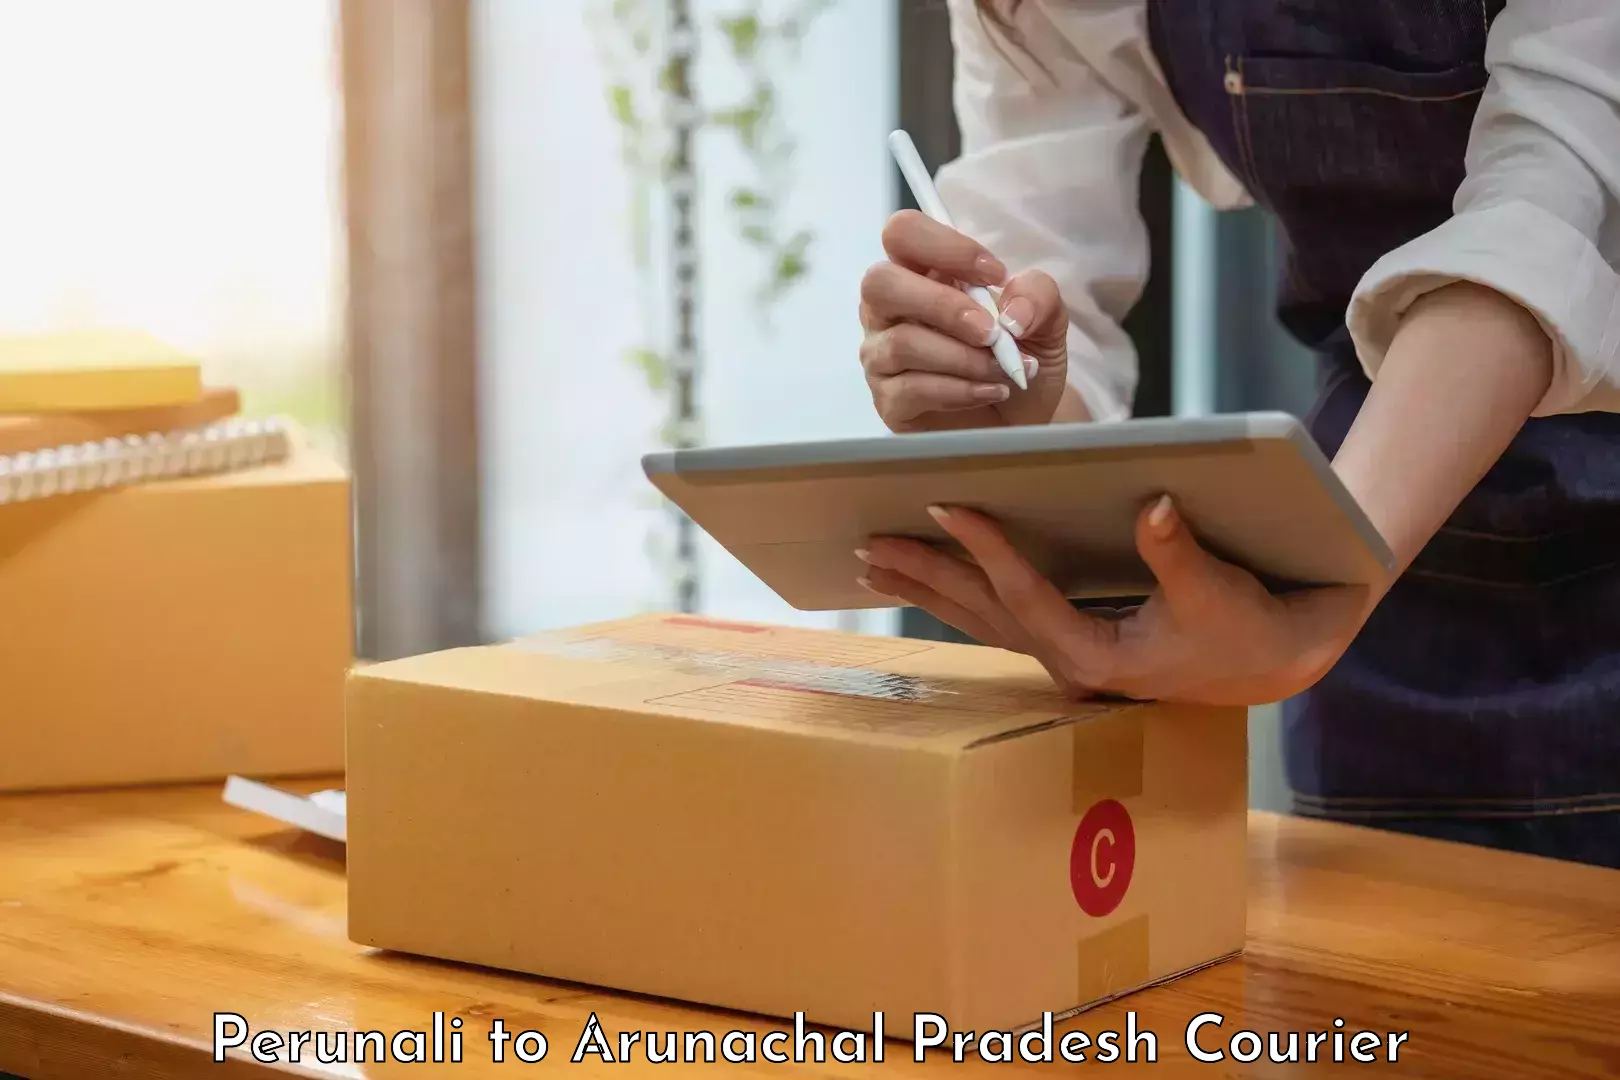 Local delivery service Perunali to Lohit